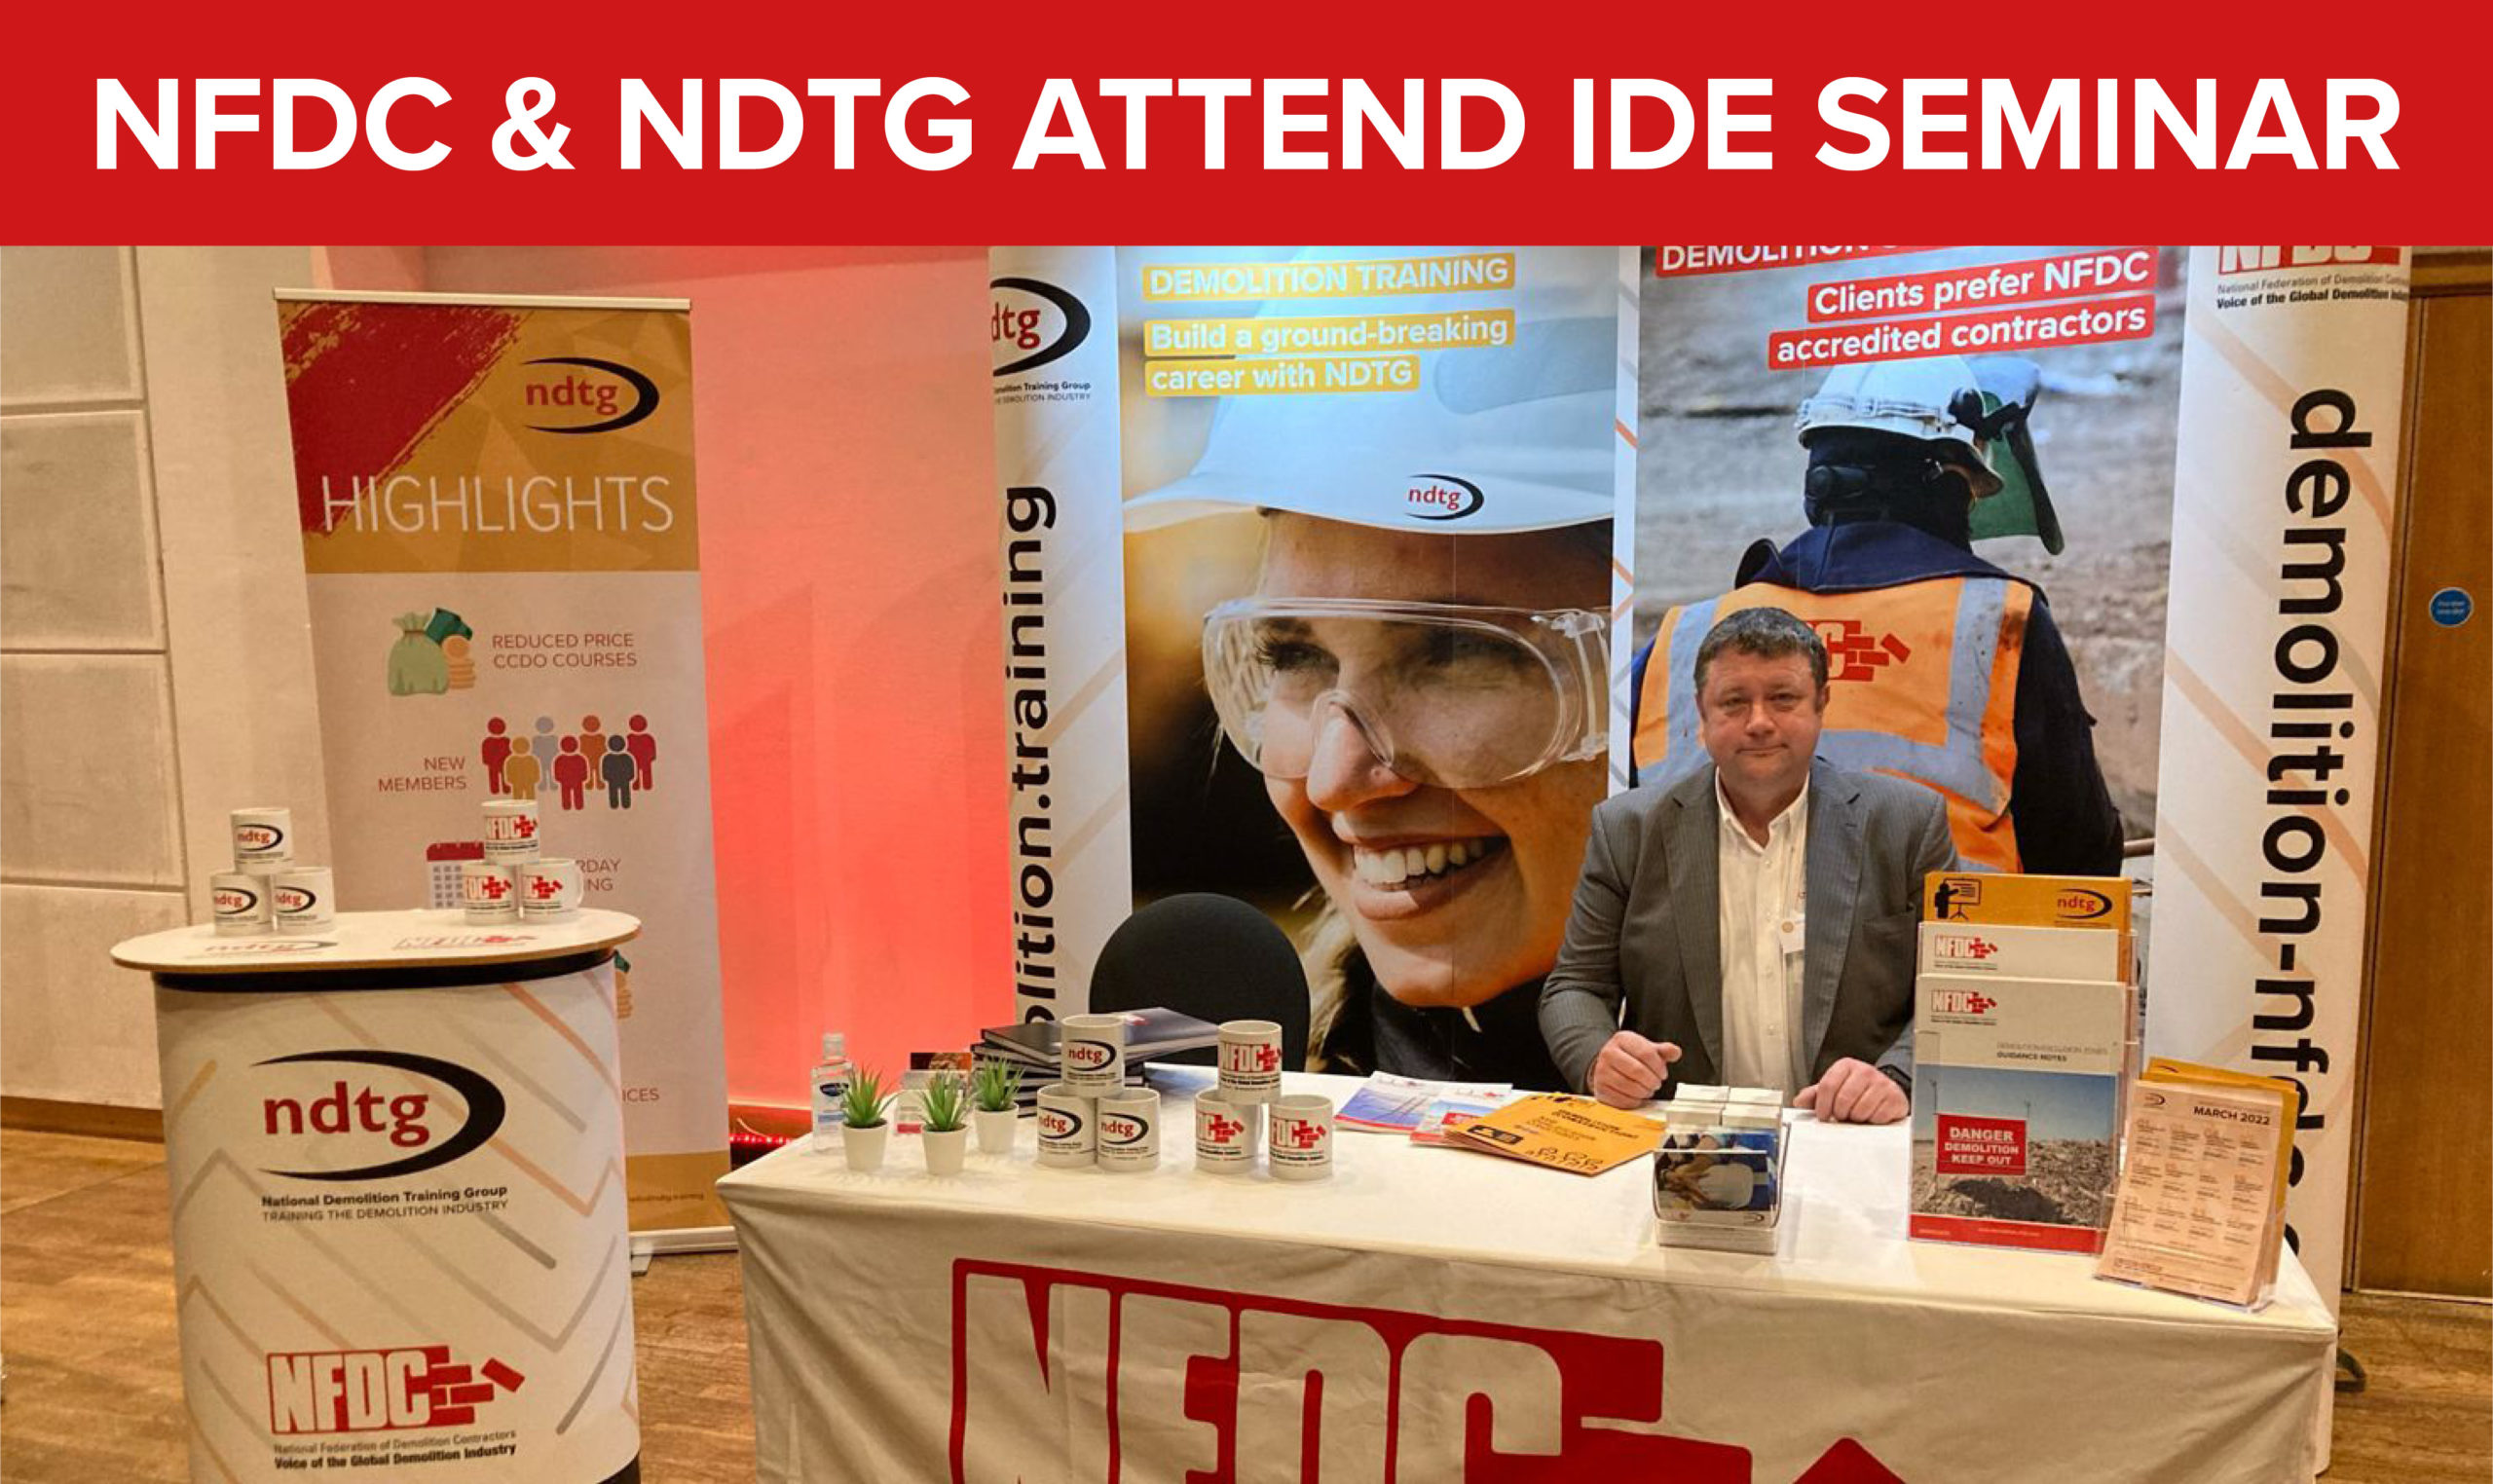 NFDC & NDTG attend IDE Spring Seminar